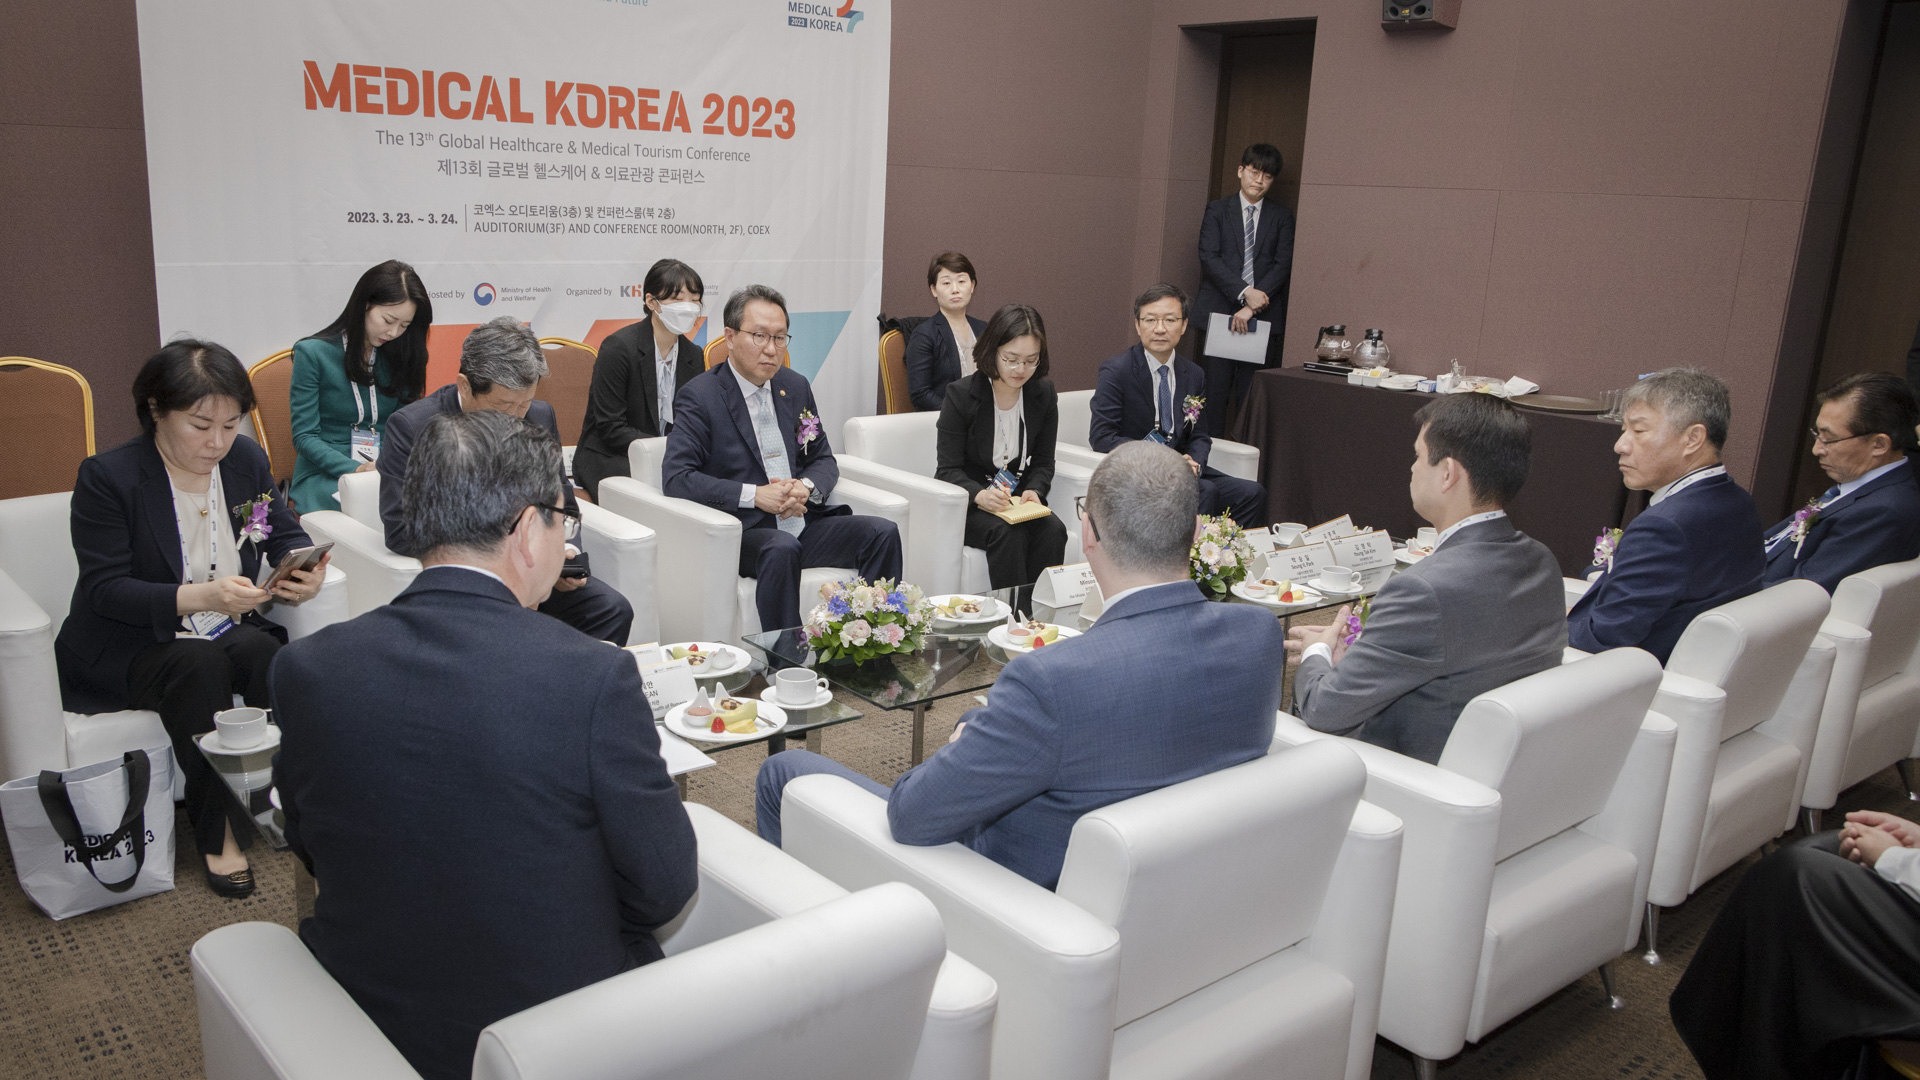 ‘더 나은 일상, 더 나은 미래를 위한 여정’ 「메디컬 코리아(Medical Korea) 2023」